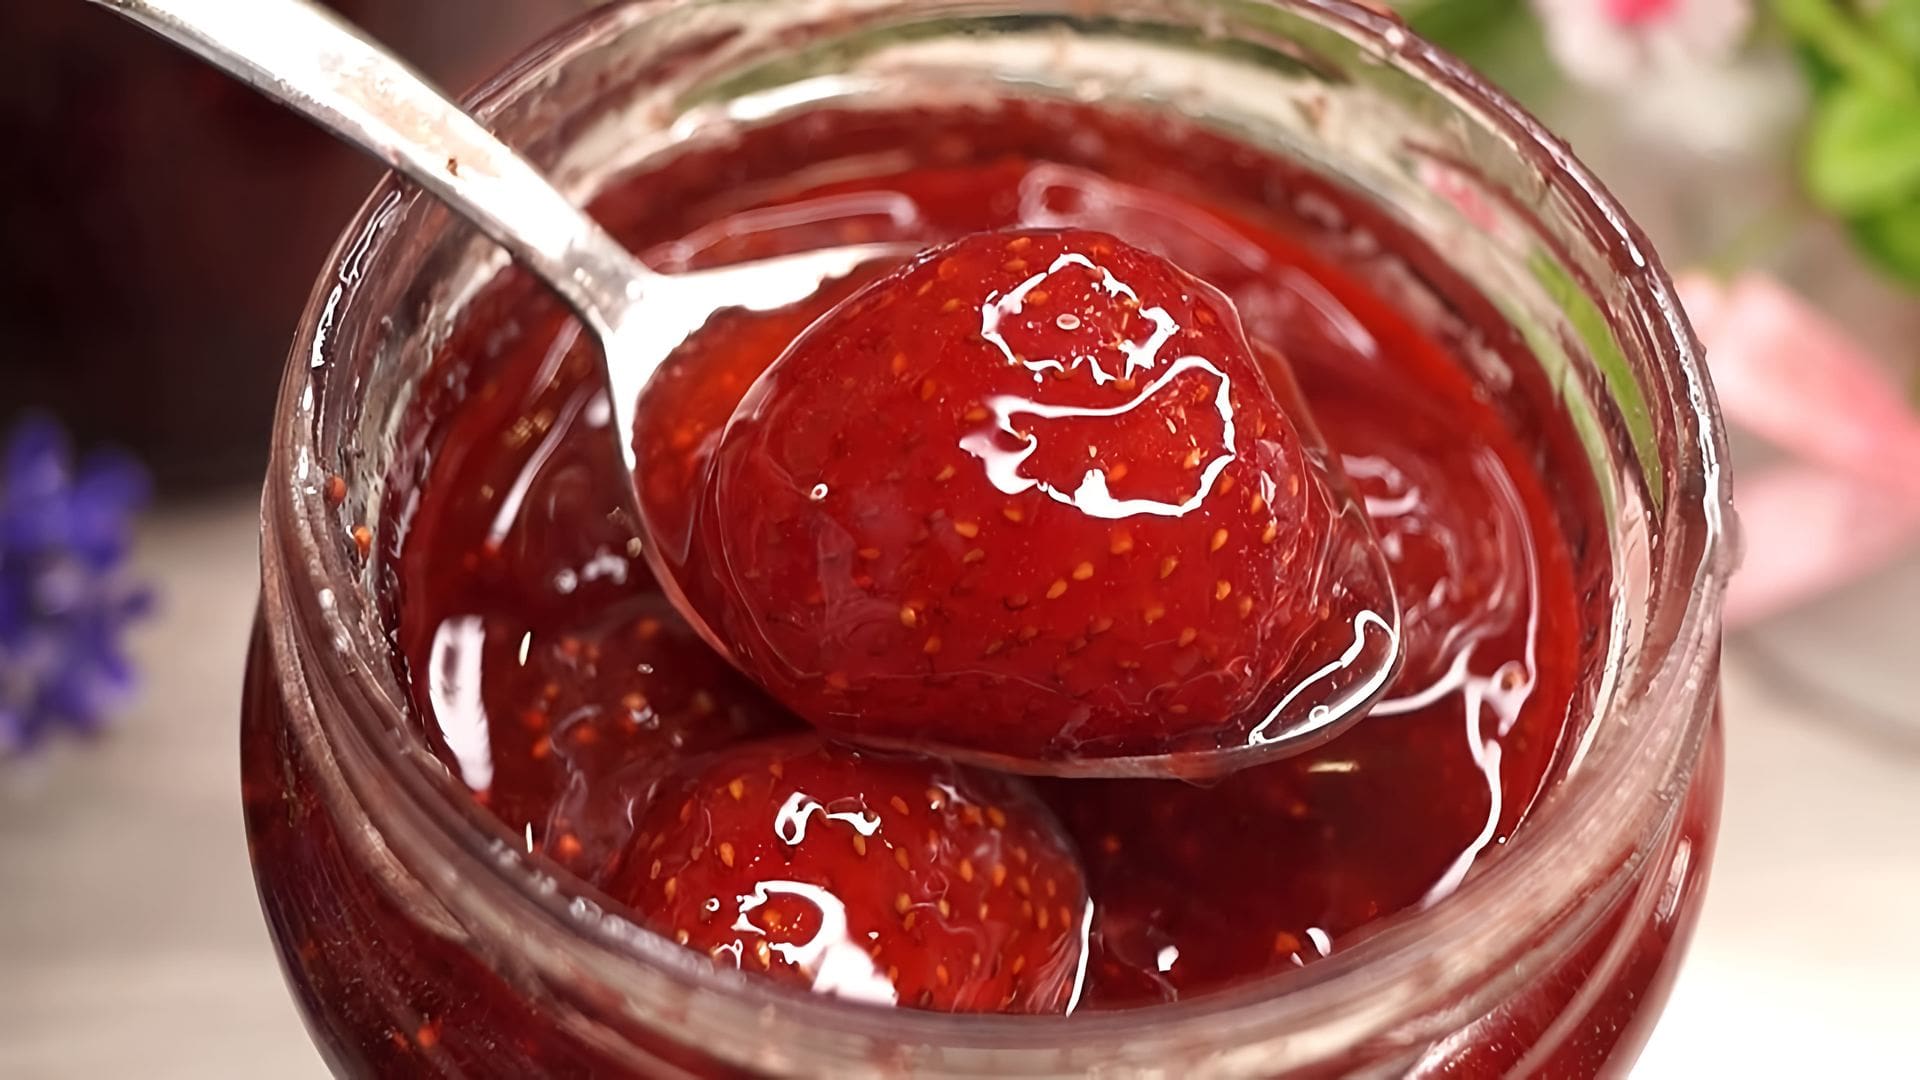 Видео как приготовить клубничное варенье на плите таким образом, чтобы ягоды оставались целыми и яркими